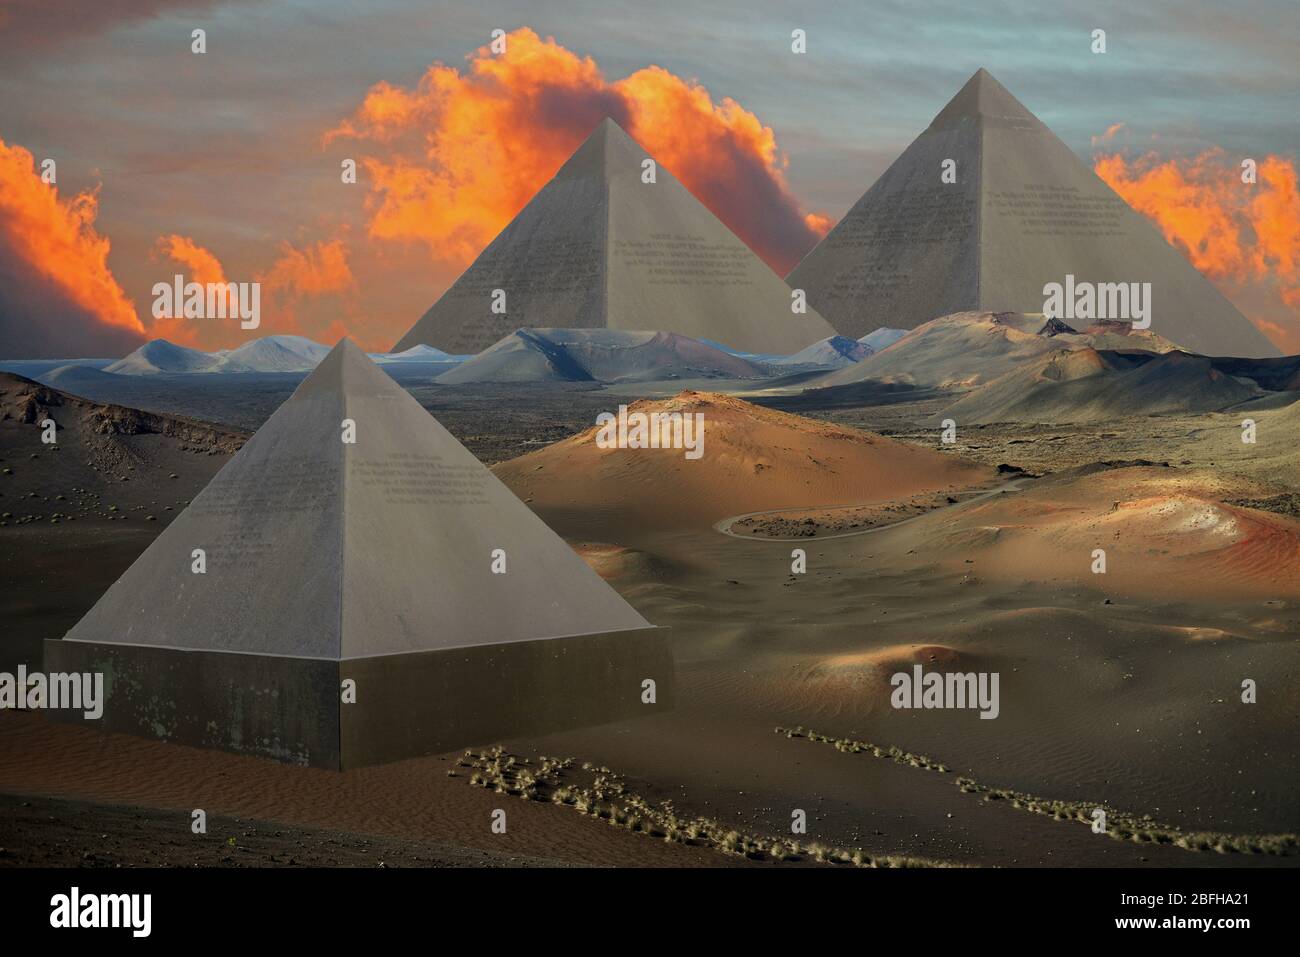 Piramidi alieni su un pianeta alieno è stato creato utilizzando il paesaggio vulcanico di Lanzarote e una pietra commemorativa a forma di piramide fatta di ardesia. Foto Stock